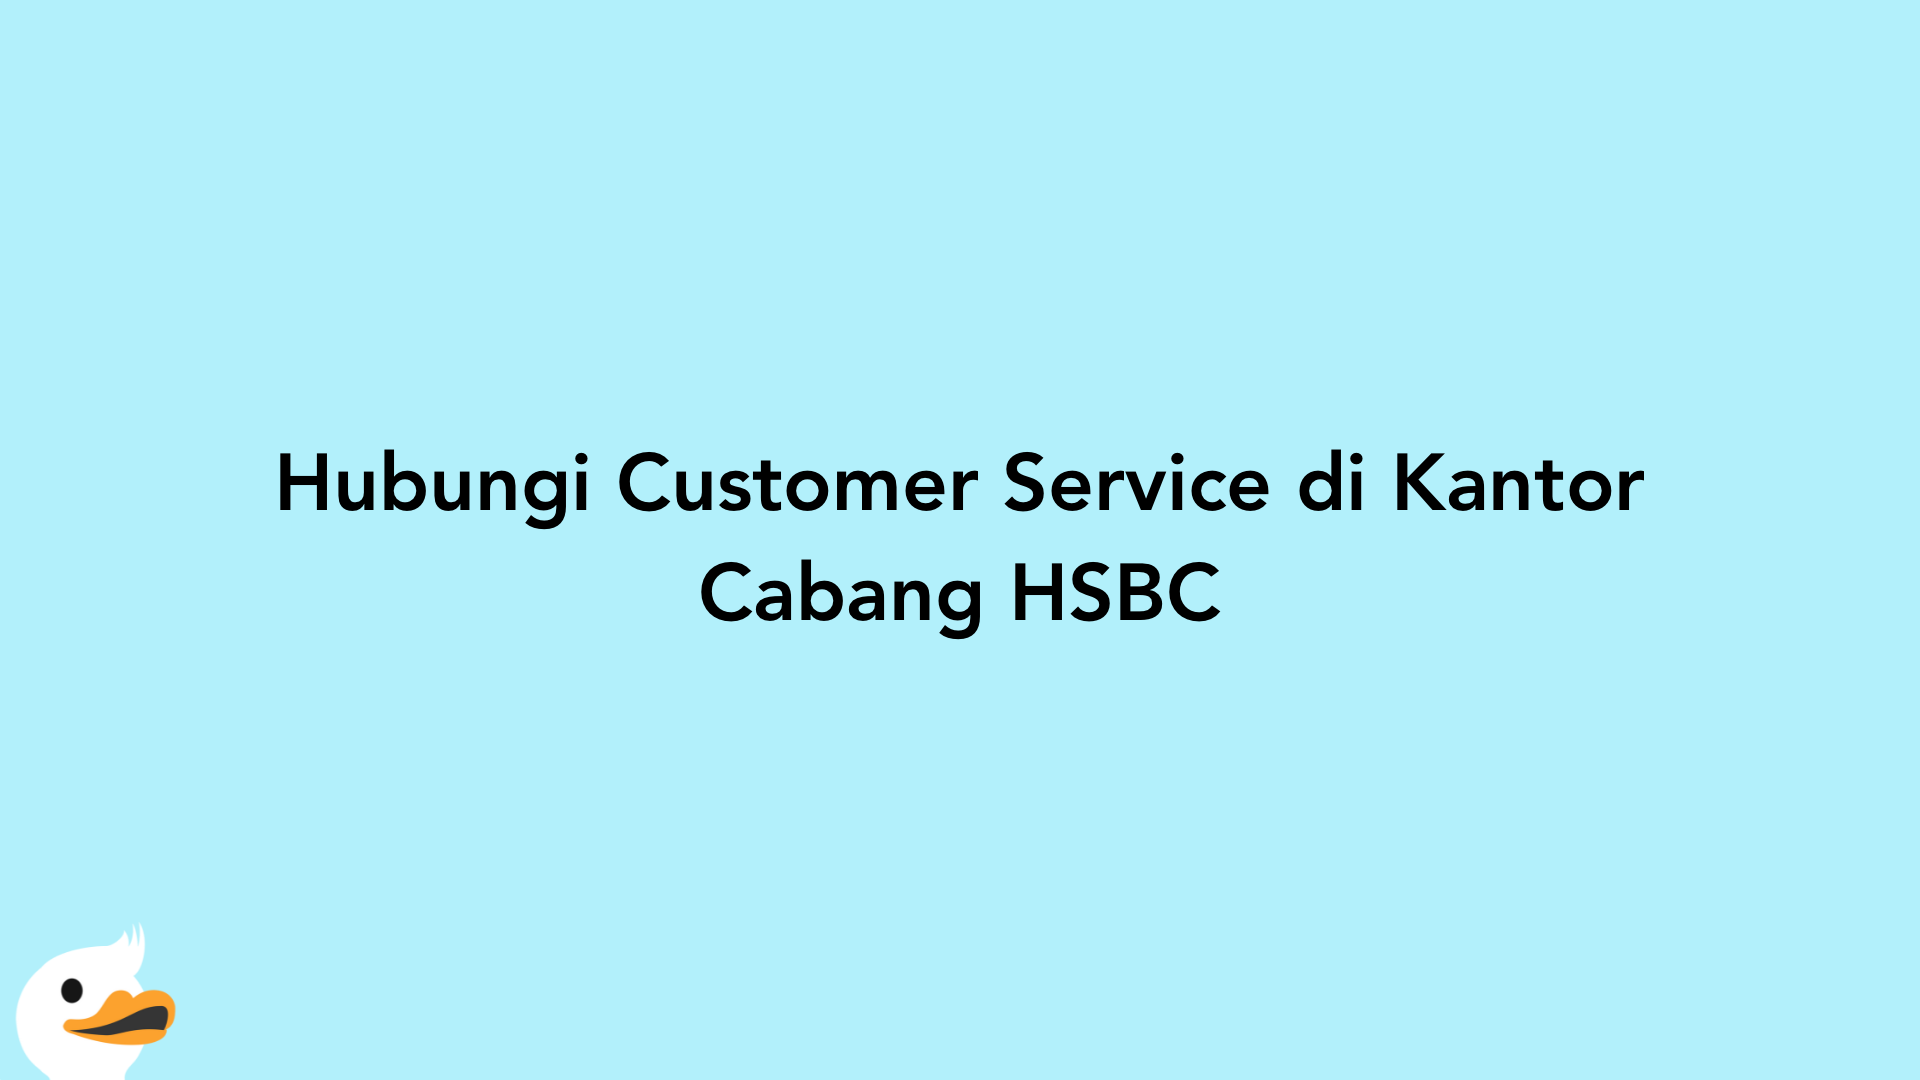 Hubungi Customer Service di Kantor Cabang HSBC